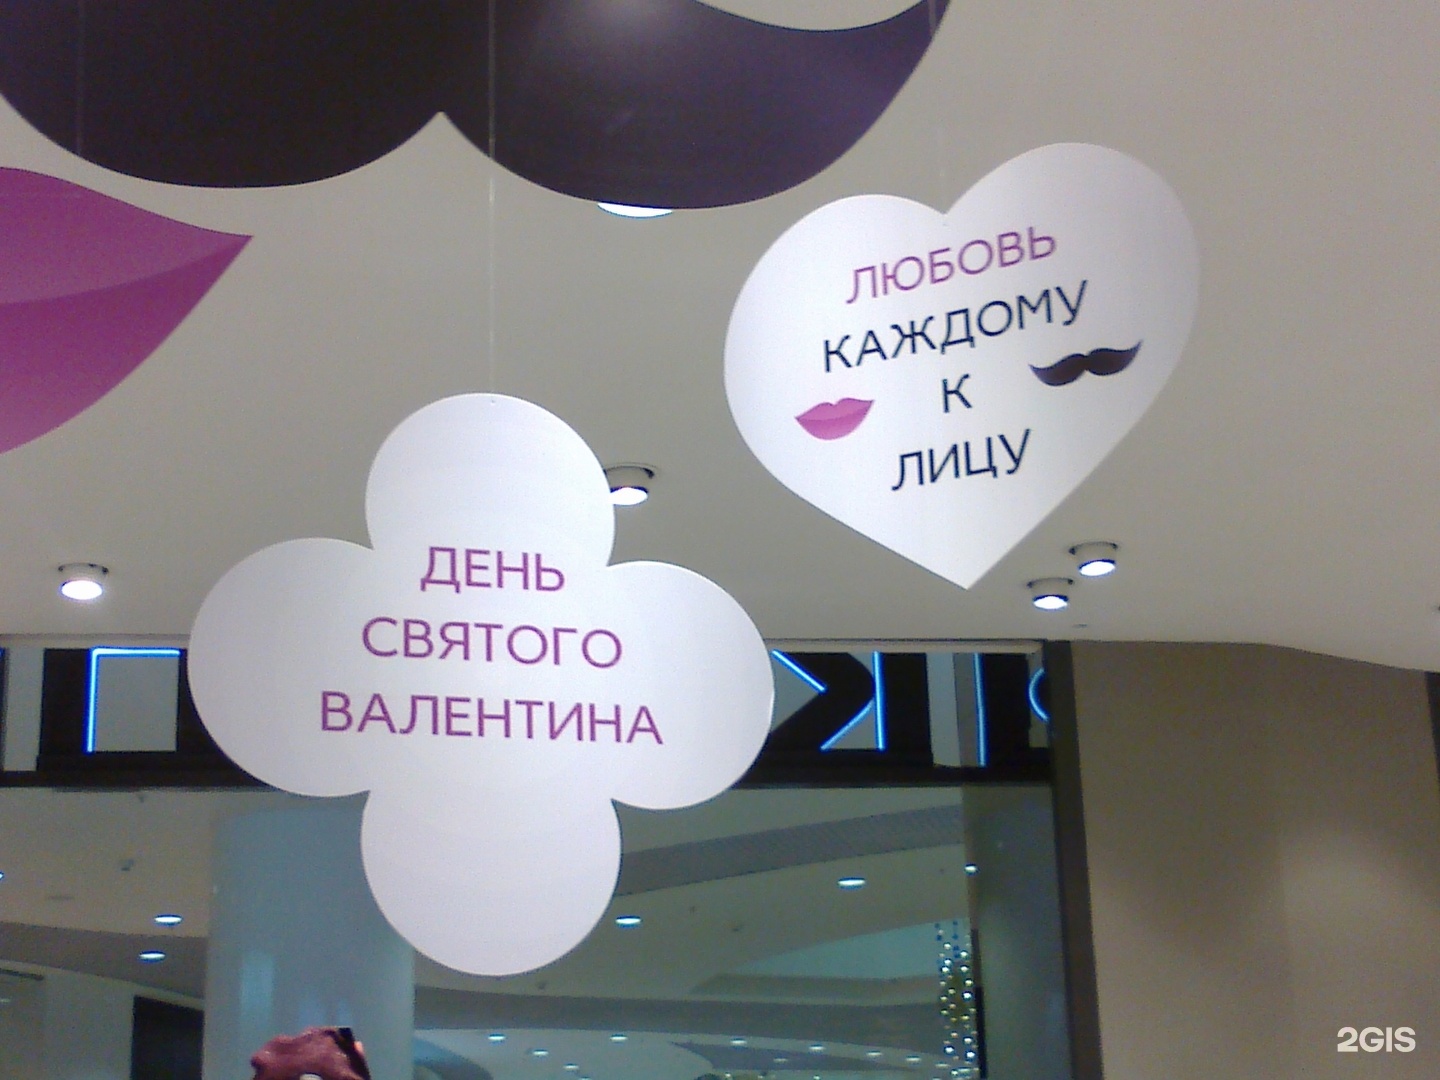 Туту новосибирск. Галерея Новосибирск этажи. Галерея Новосибирск 3 этаж. Галерея Новосибирск по этажам. Галерея Новосибирск магазины список.